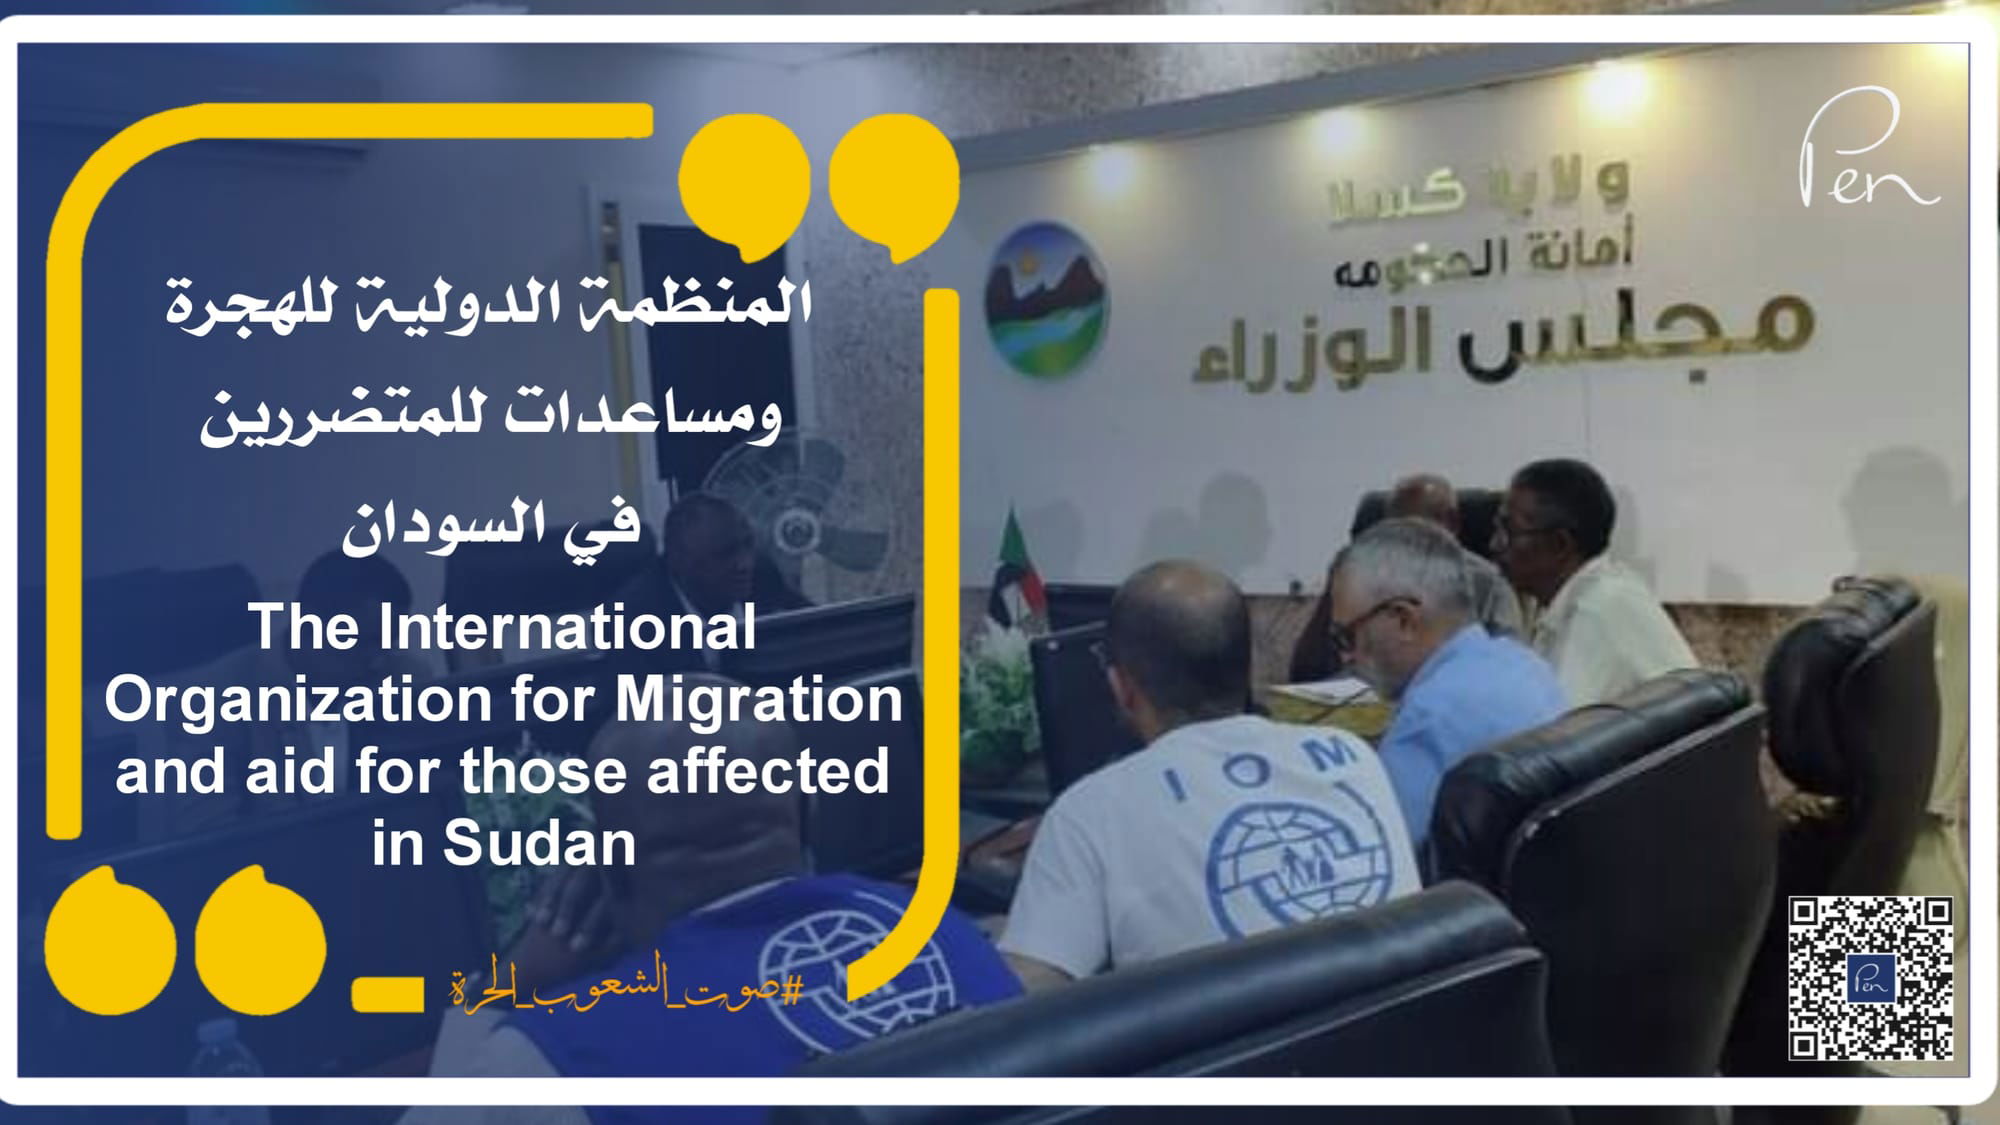 المنظمة الدولية للهجرة ومساعدات للمتضررين في السودان